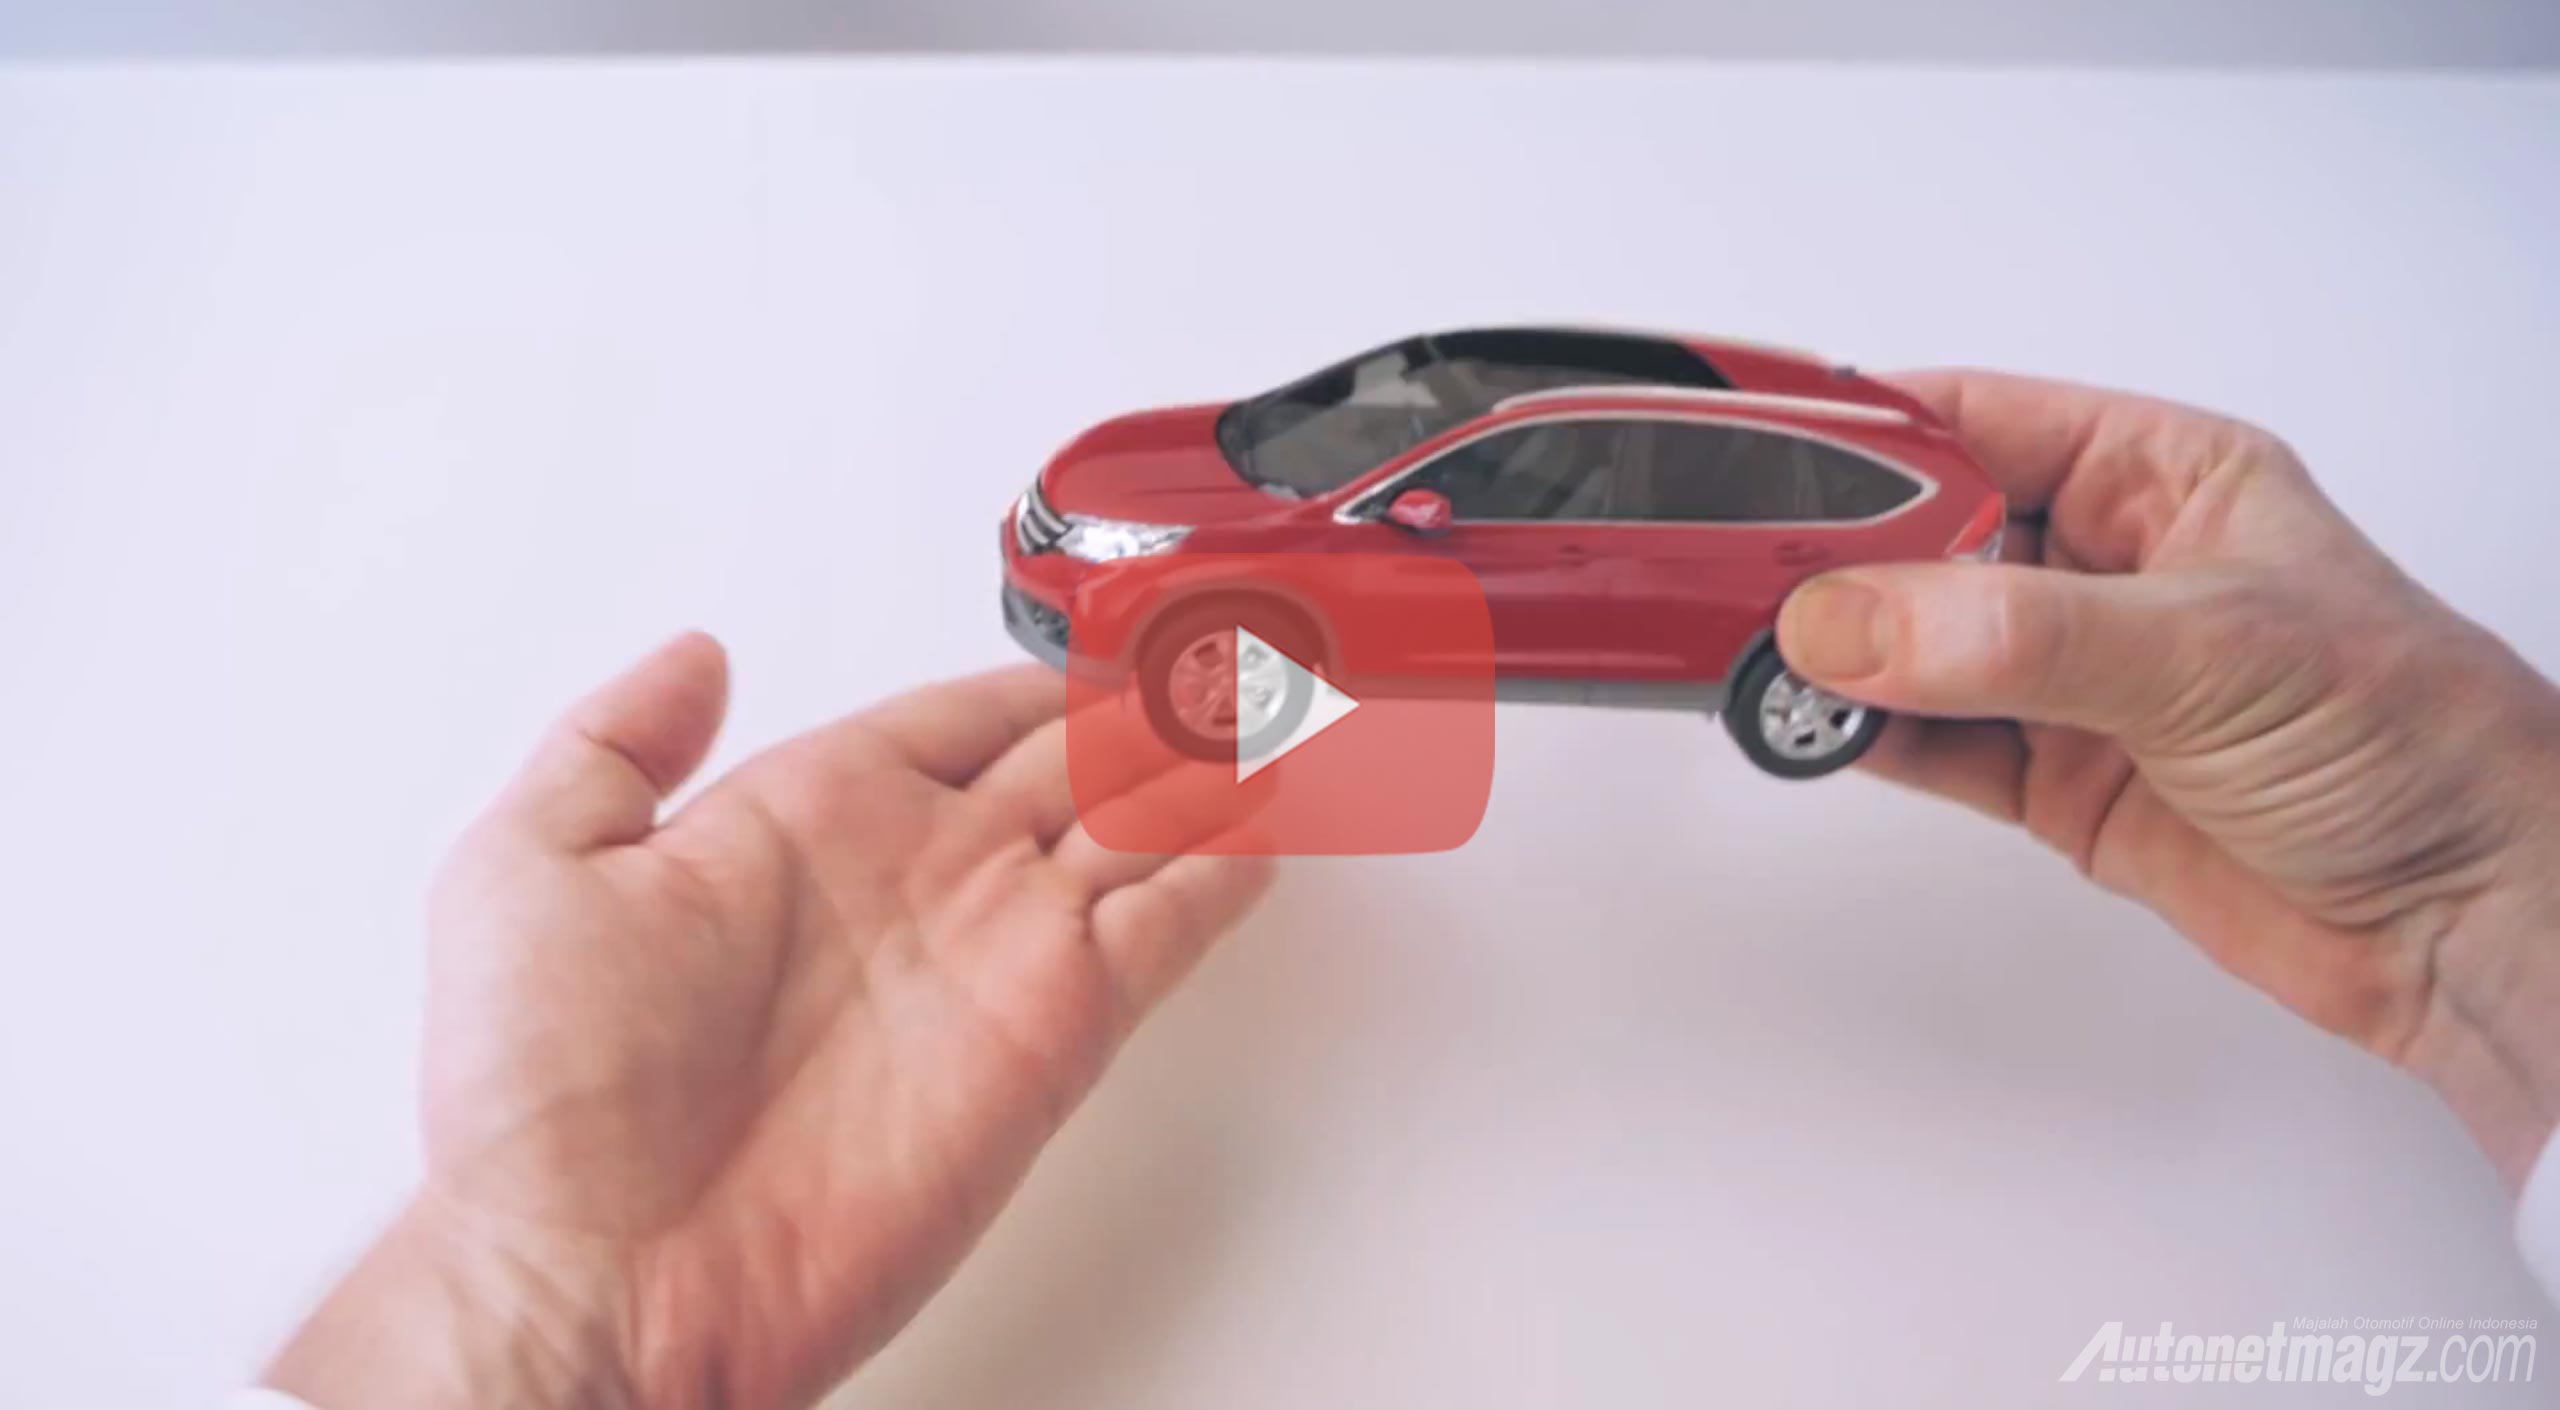 Honda, iklan TV Honda TVC: Video Honda “Hands” Untuk Merayakan 65 Tahun Inovasi Honda